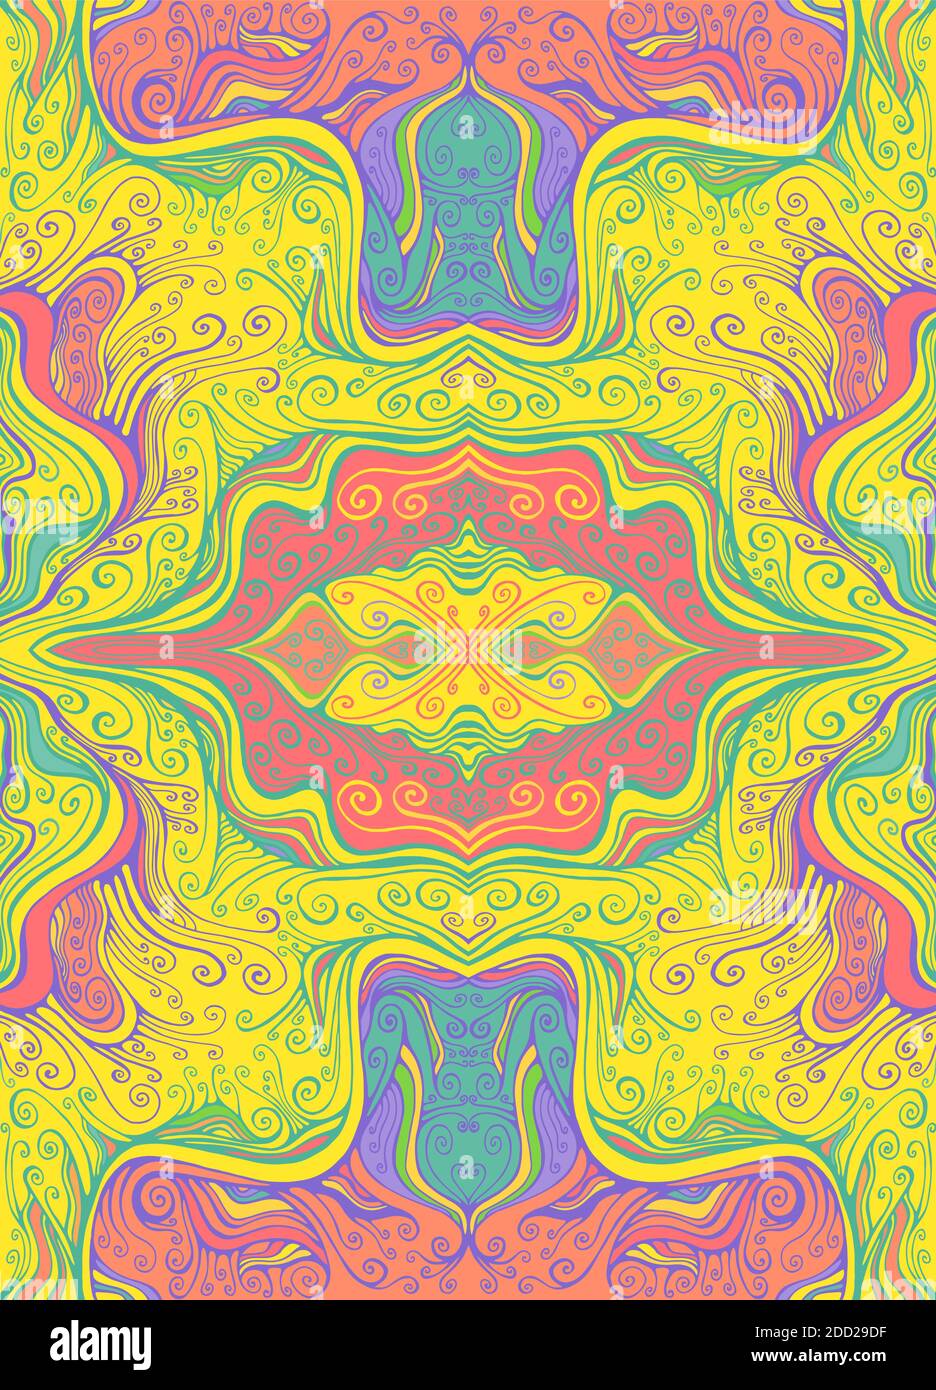 Fond de kaléidoscope à vagues colorées psychédéliques, style hippie. Un art fantastique avec une texture décorative. Motif surréaliste avec fractale abstraite. Illustration de Vecteur